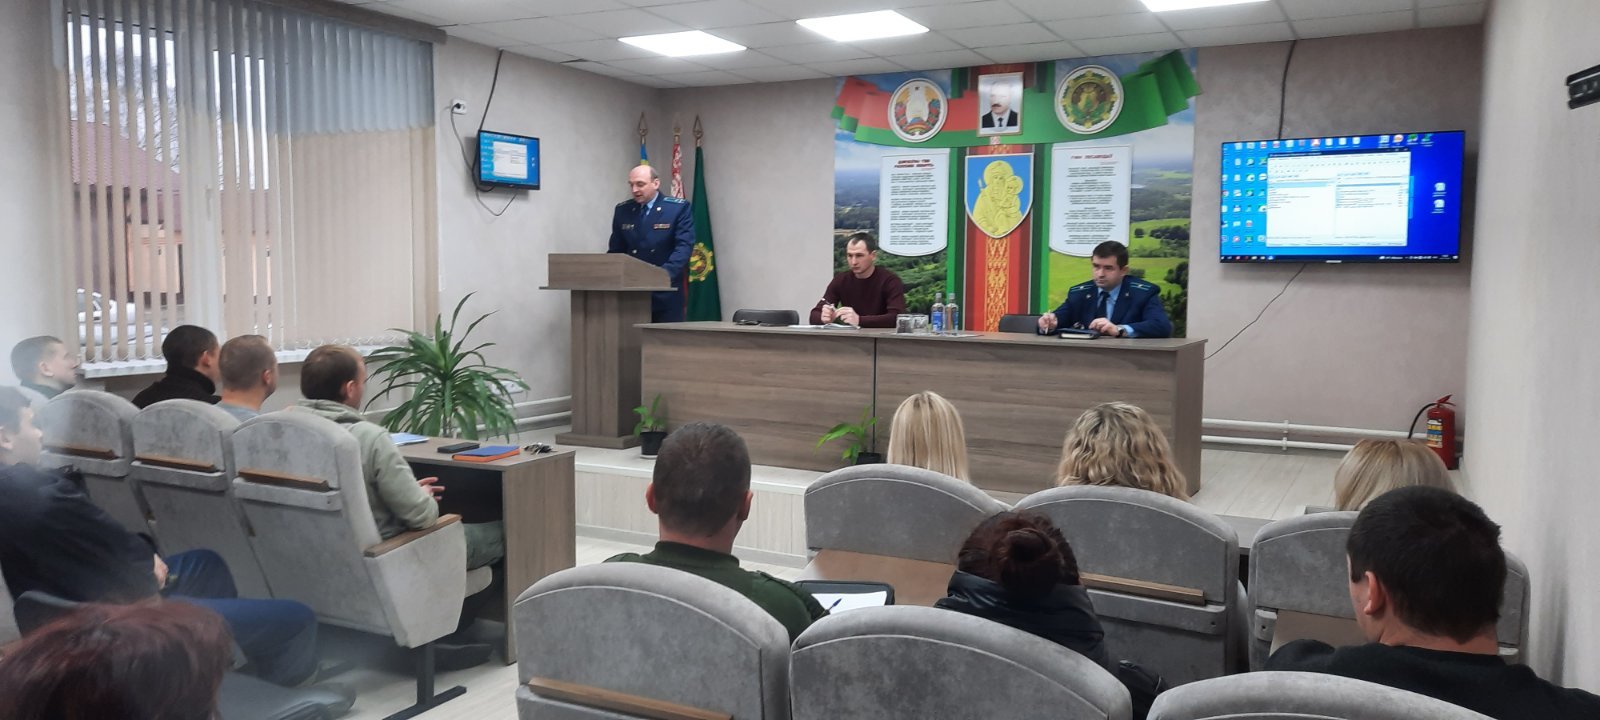 26 ноября 2021 года состоялась встреча трудового коллектива ГЛХУ «Белыничский лесхоз»  с прокуром  Белыничского района